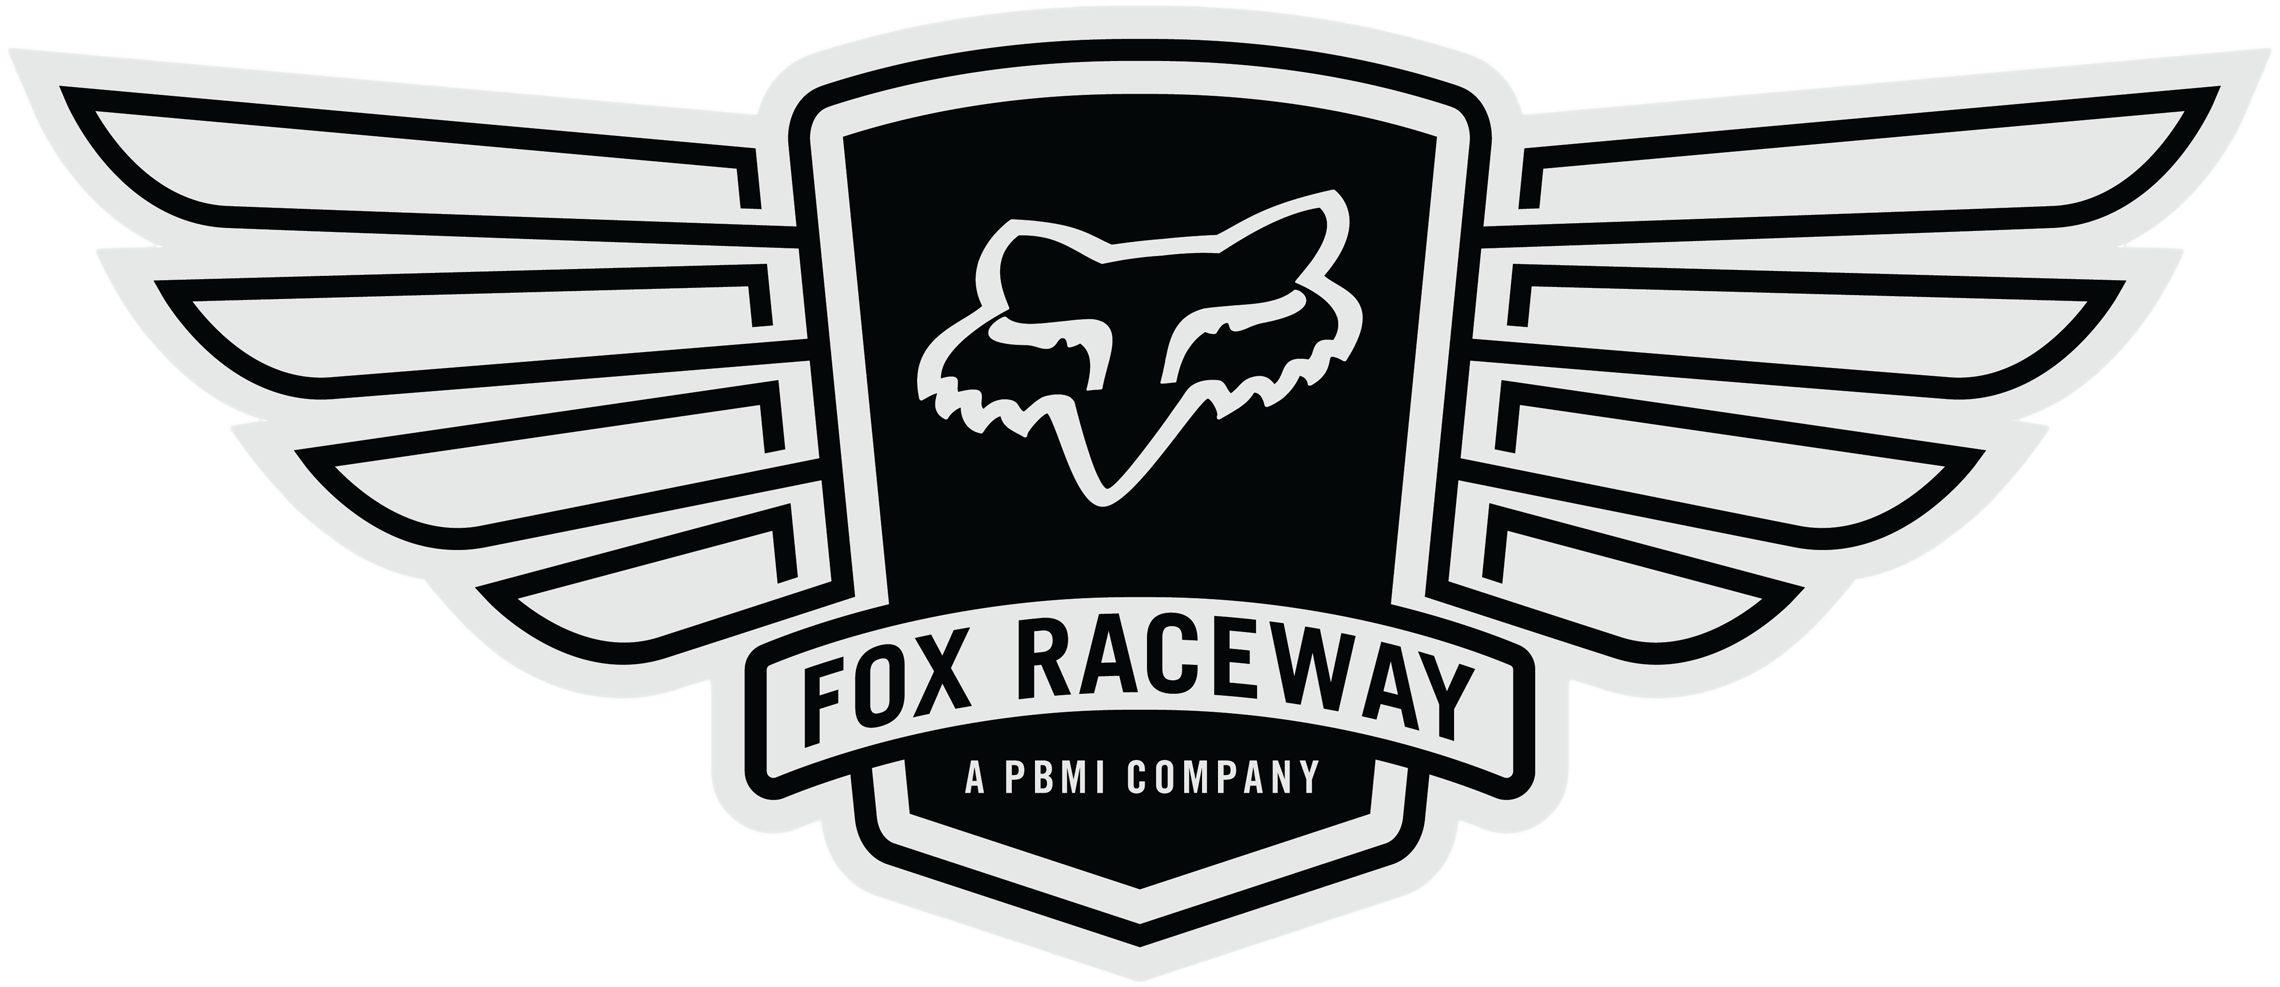 Racetrack Logo - Fox Raceway – Fox Raceway